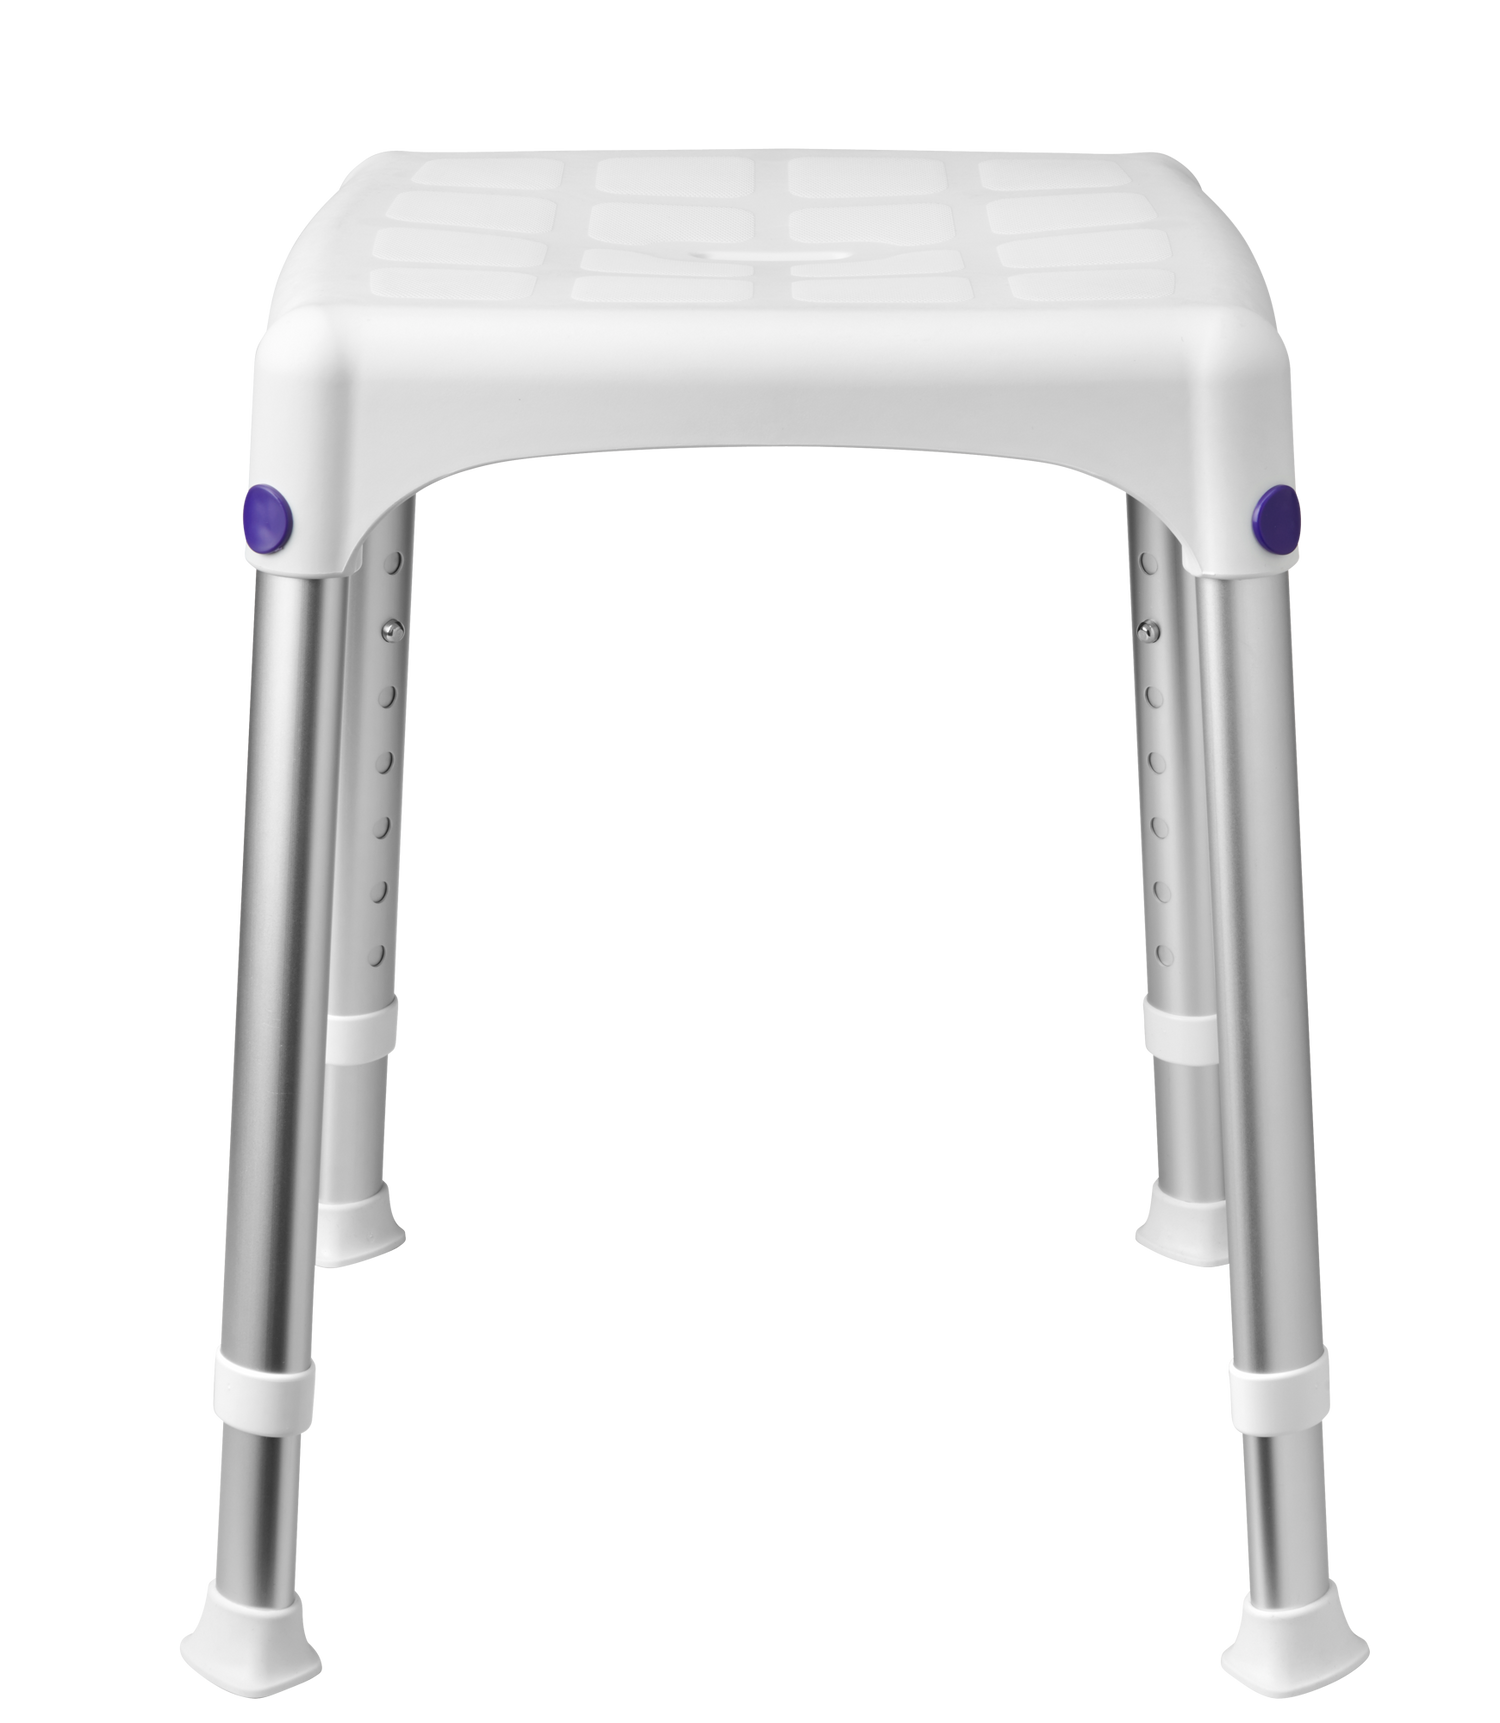 SecuCare Shower stool Quattro